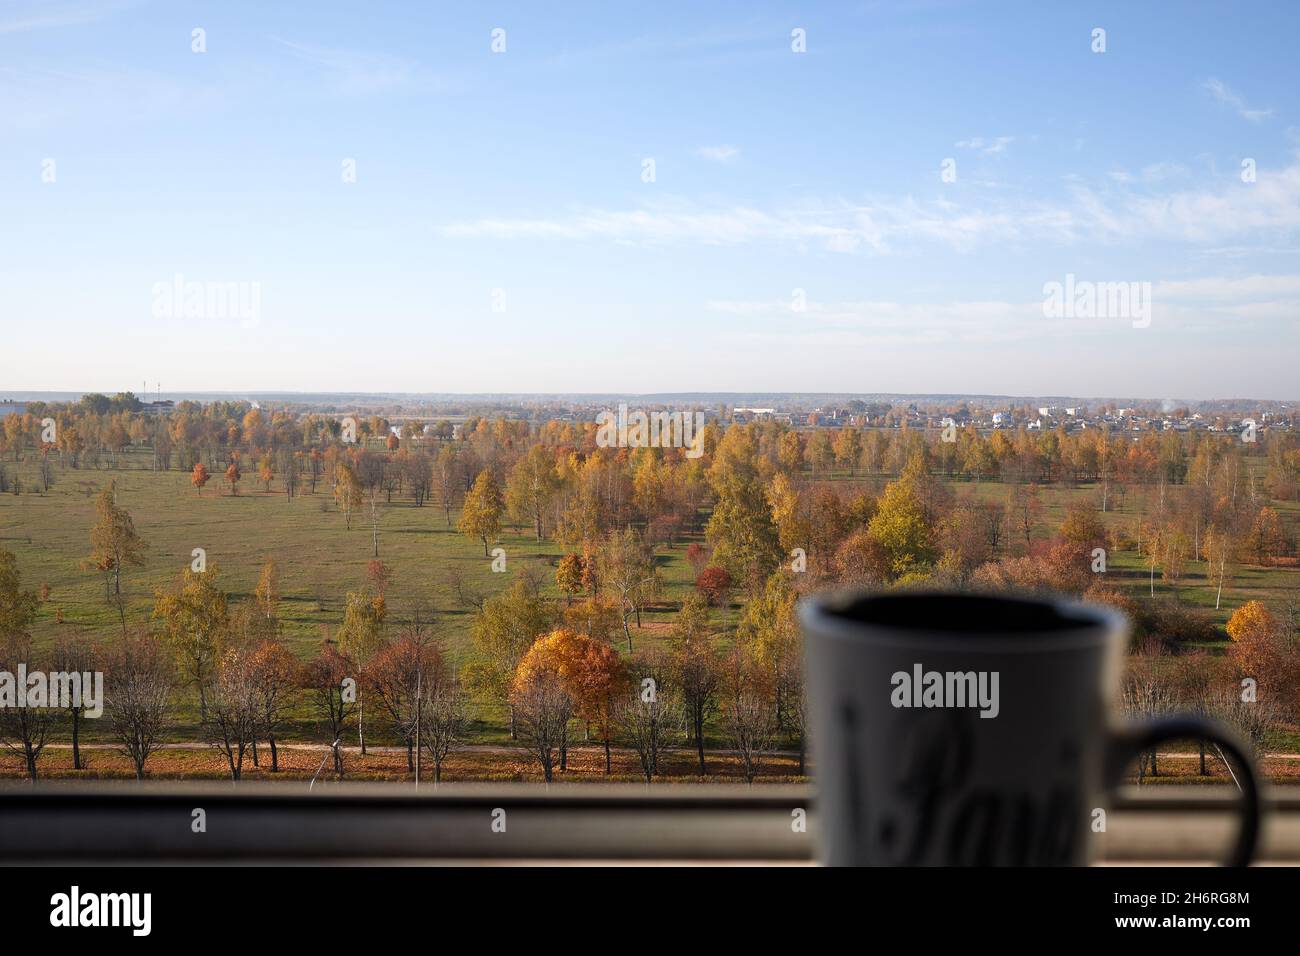 tasse Tee stehen auf der Brüstung des Fensters vor dem Hintergrund des Herbstpanoramas der Stadt Stockfoto